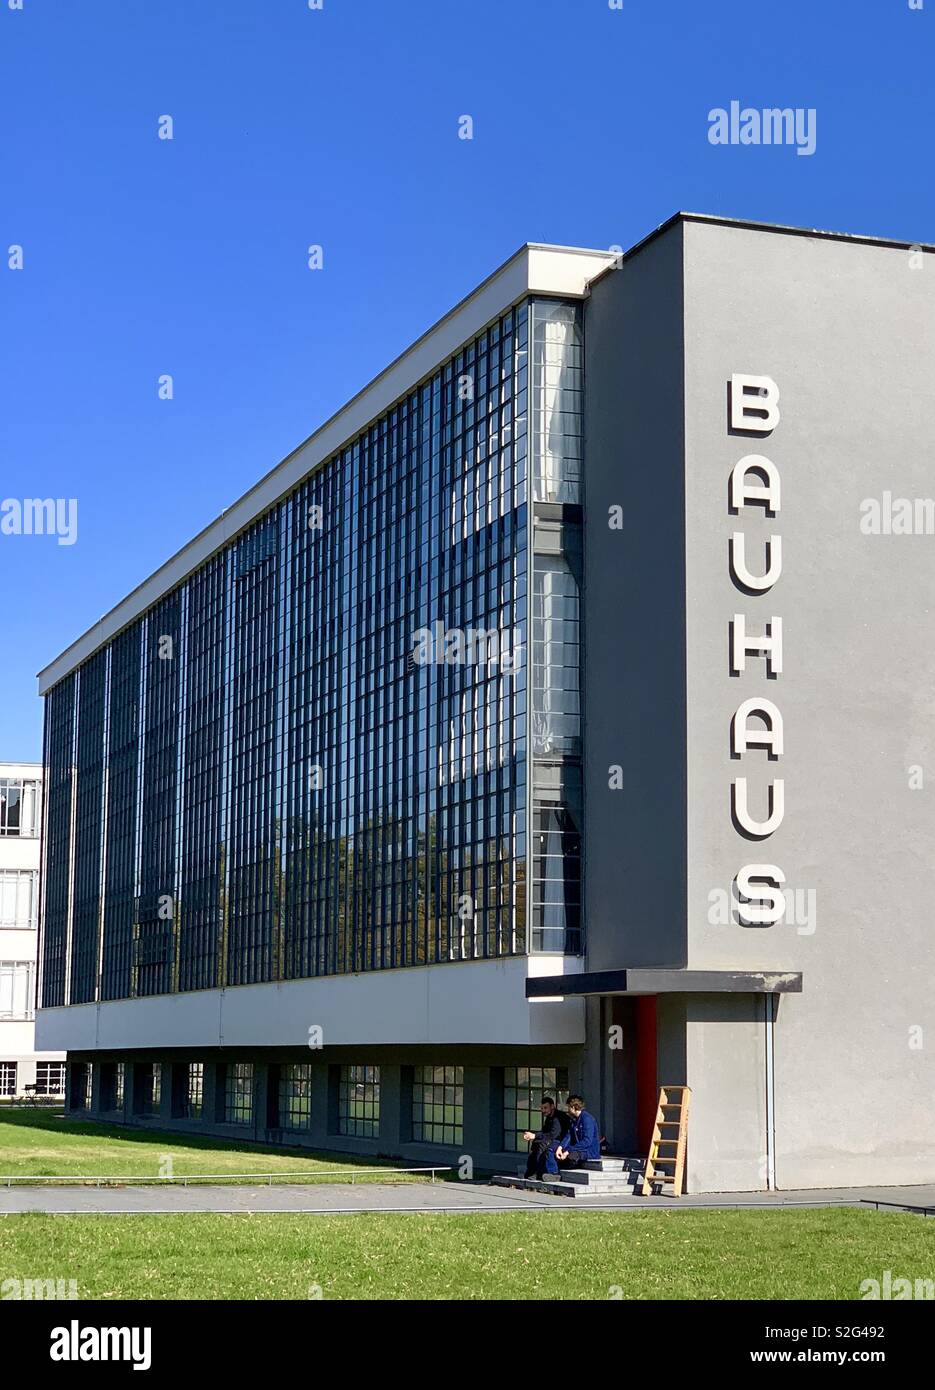 Bauhaus Dessau Foundation, Dessau, Germany. Stock Photo